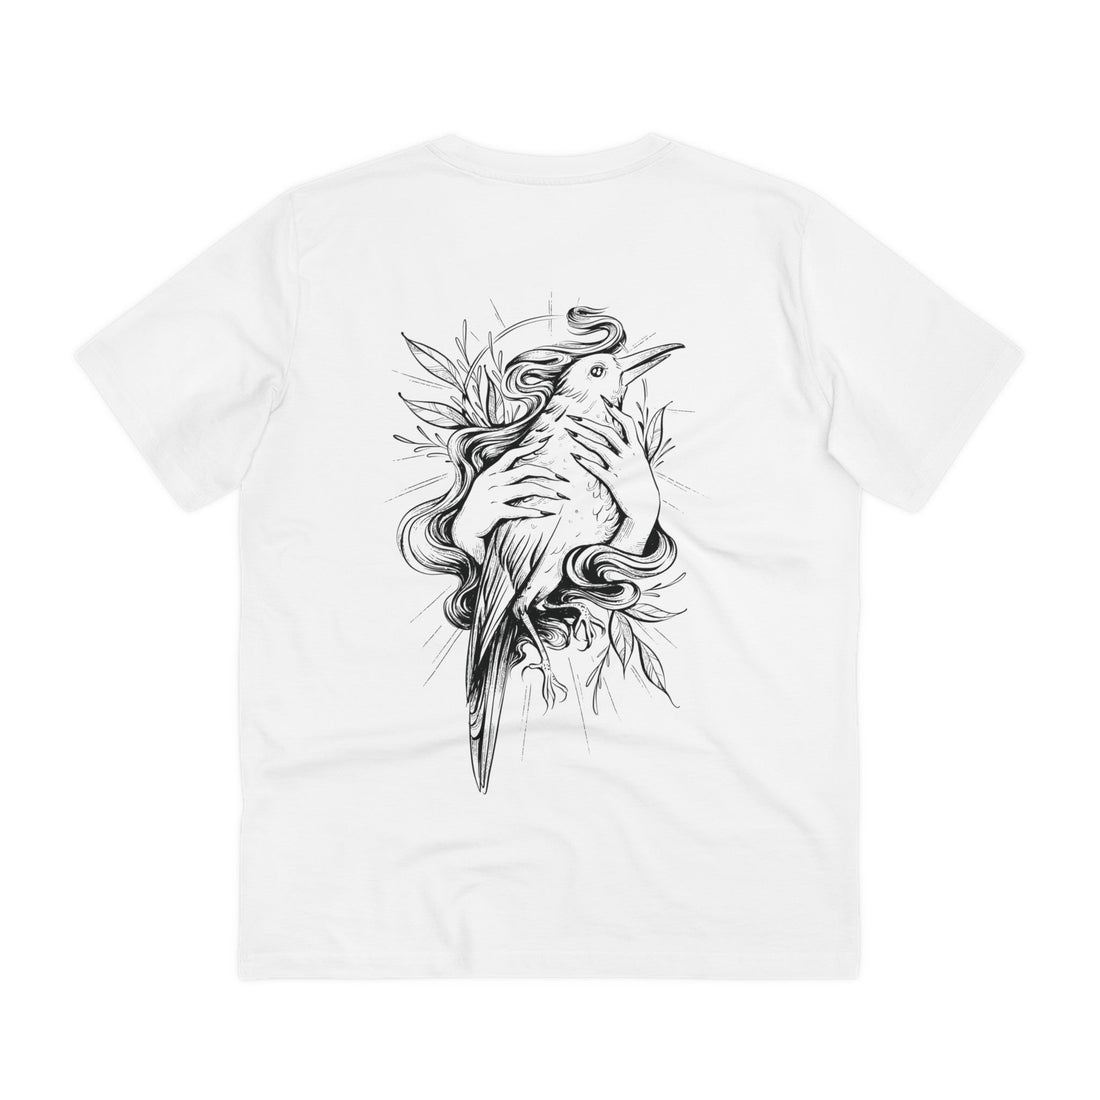 Printify T-Shirt White / 2XS Bird in Female Hands - Hand Drawn Dark Gothic - Back Design